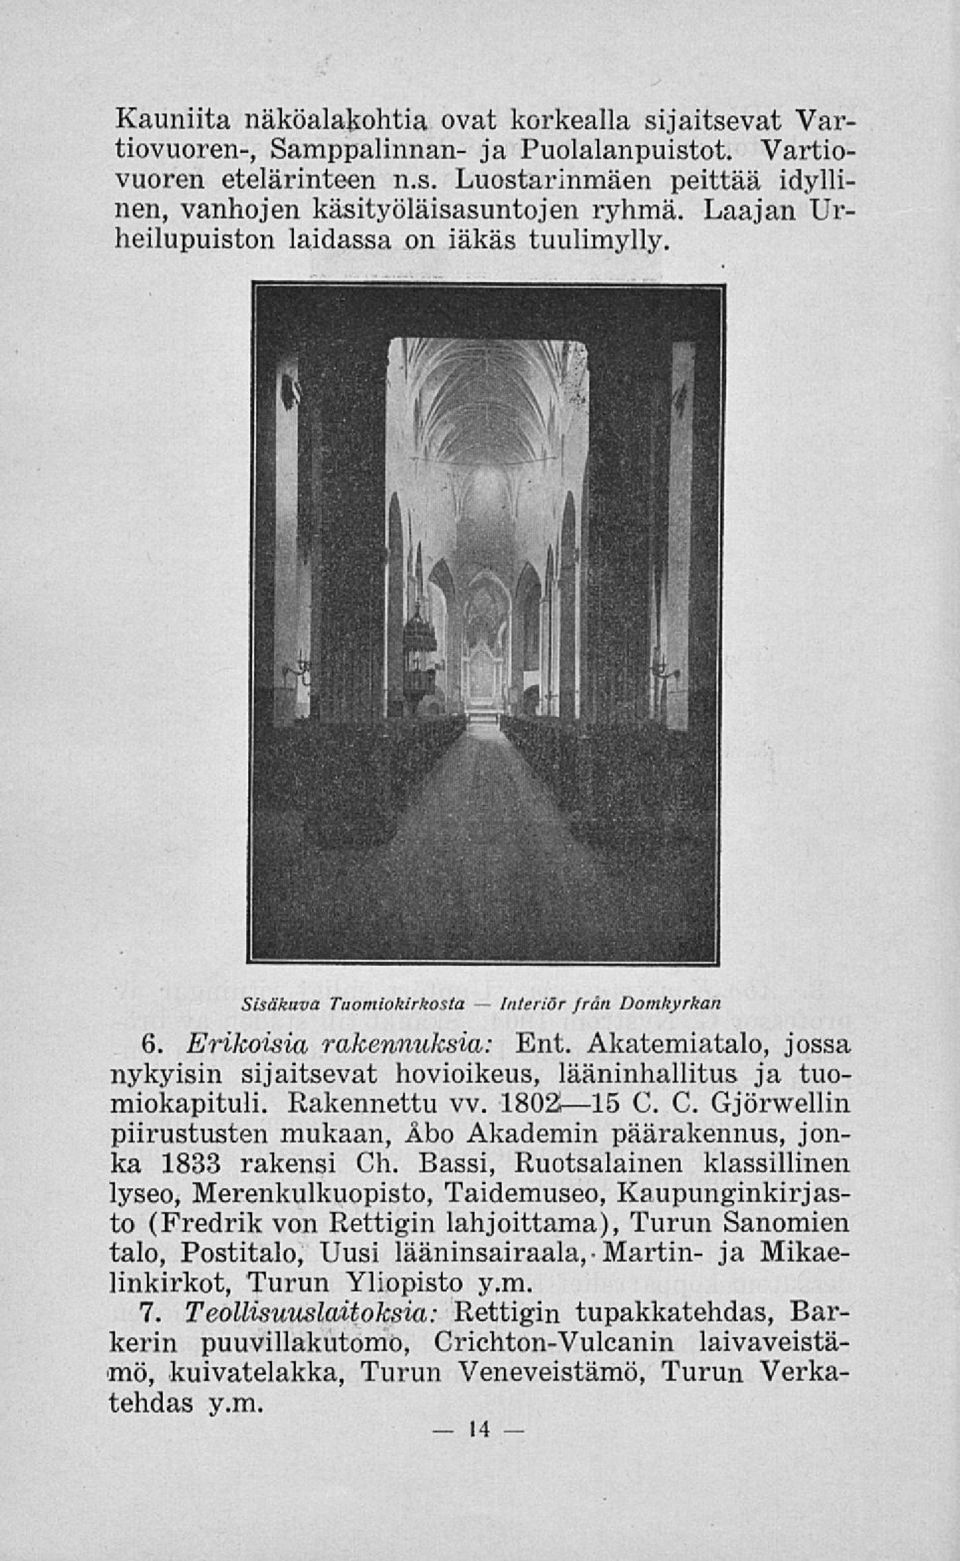 Akatemiatalo, jossa nykyisin sijaitsevat hovioikeus, lääninhallitus ja tuomiokapituli. Rakennettu vv. 1802»15 G. C. Gjörwellin piirustusten mukaan, Åbo Akademin päärakennus, jonka 1833 rakensi Ch.